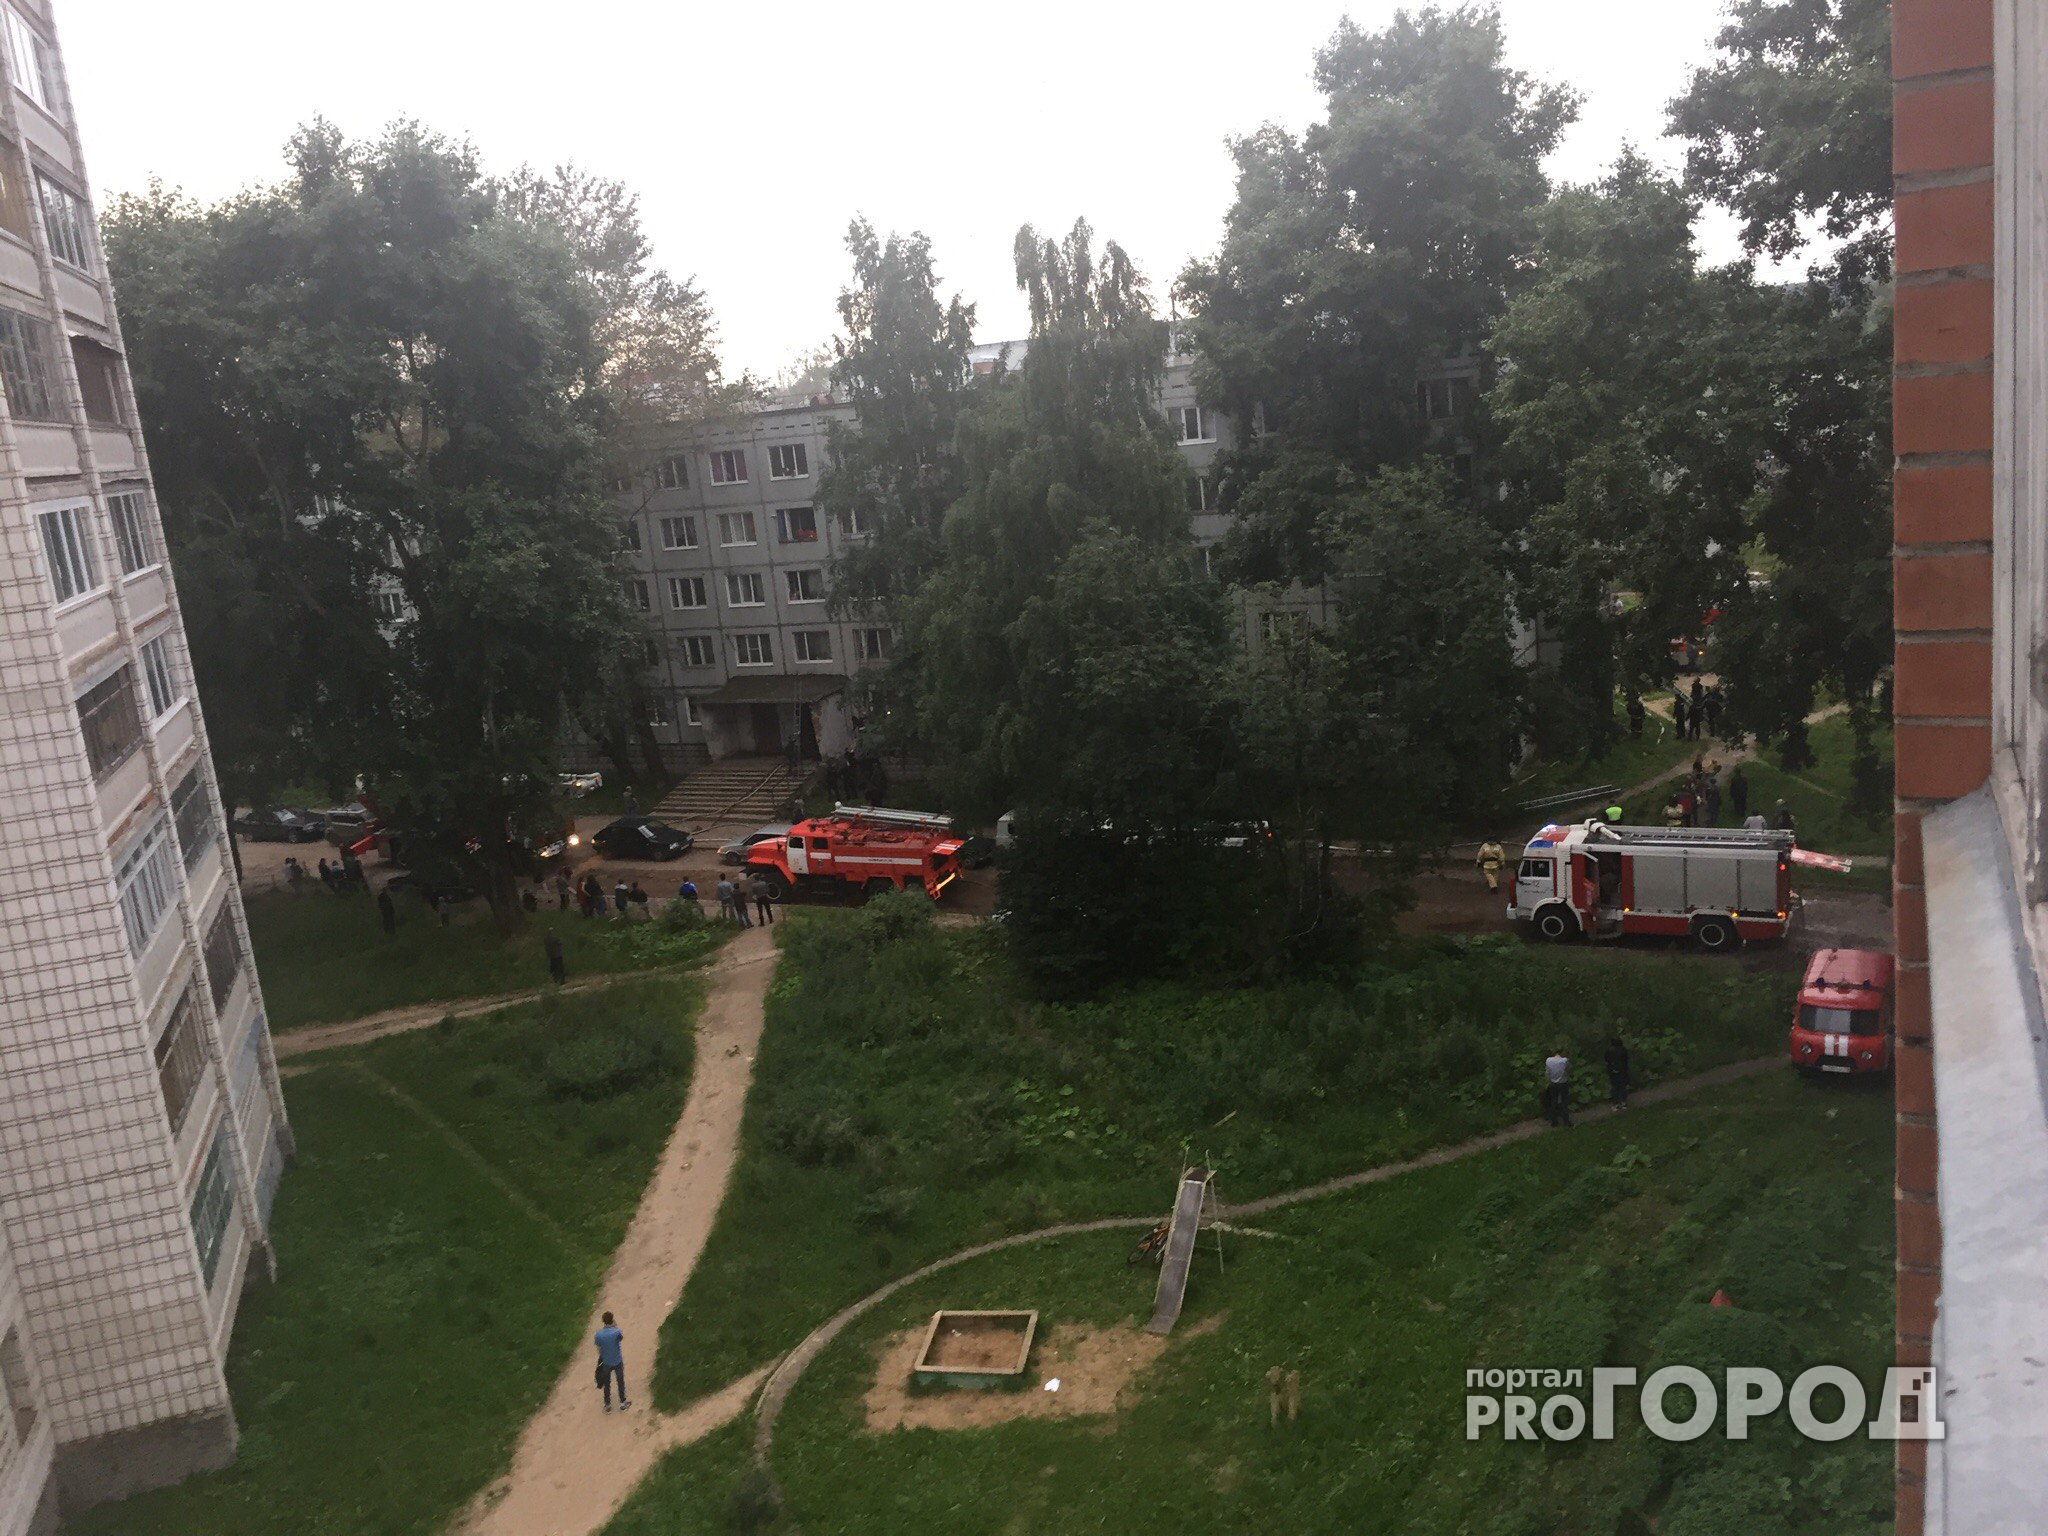 В Сыктывкаре горел жилой дом, люди в панике разбивали окна (видео)